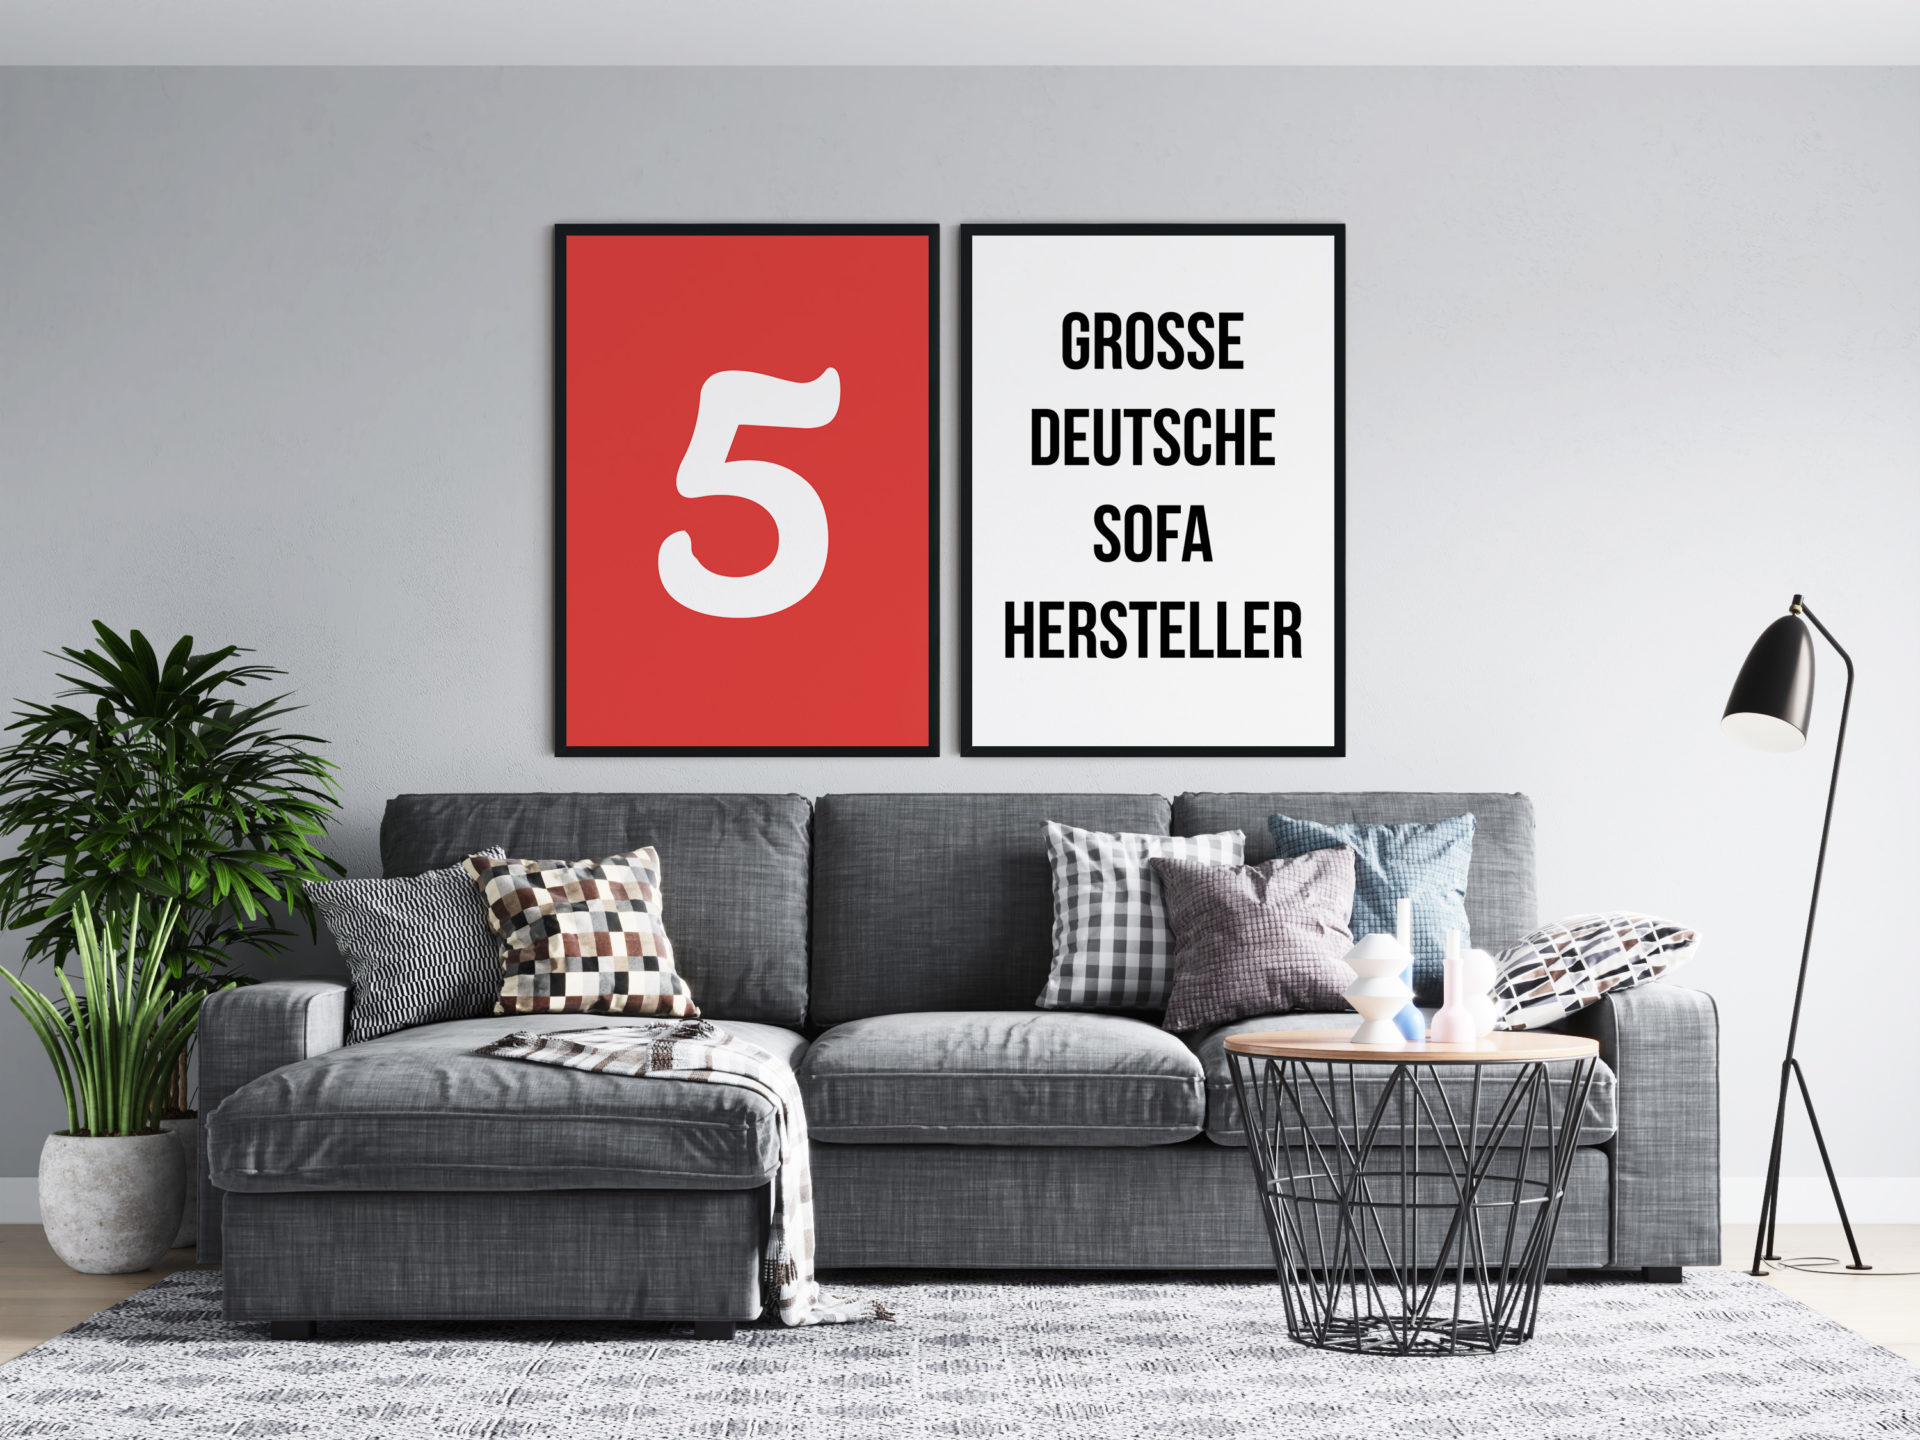 Sofa Hersteller: 5 deutsche Marken im Kurzportrait